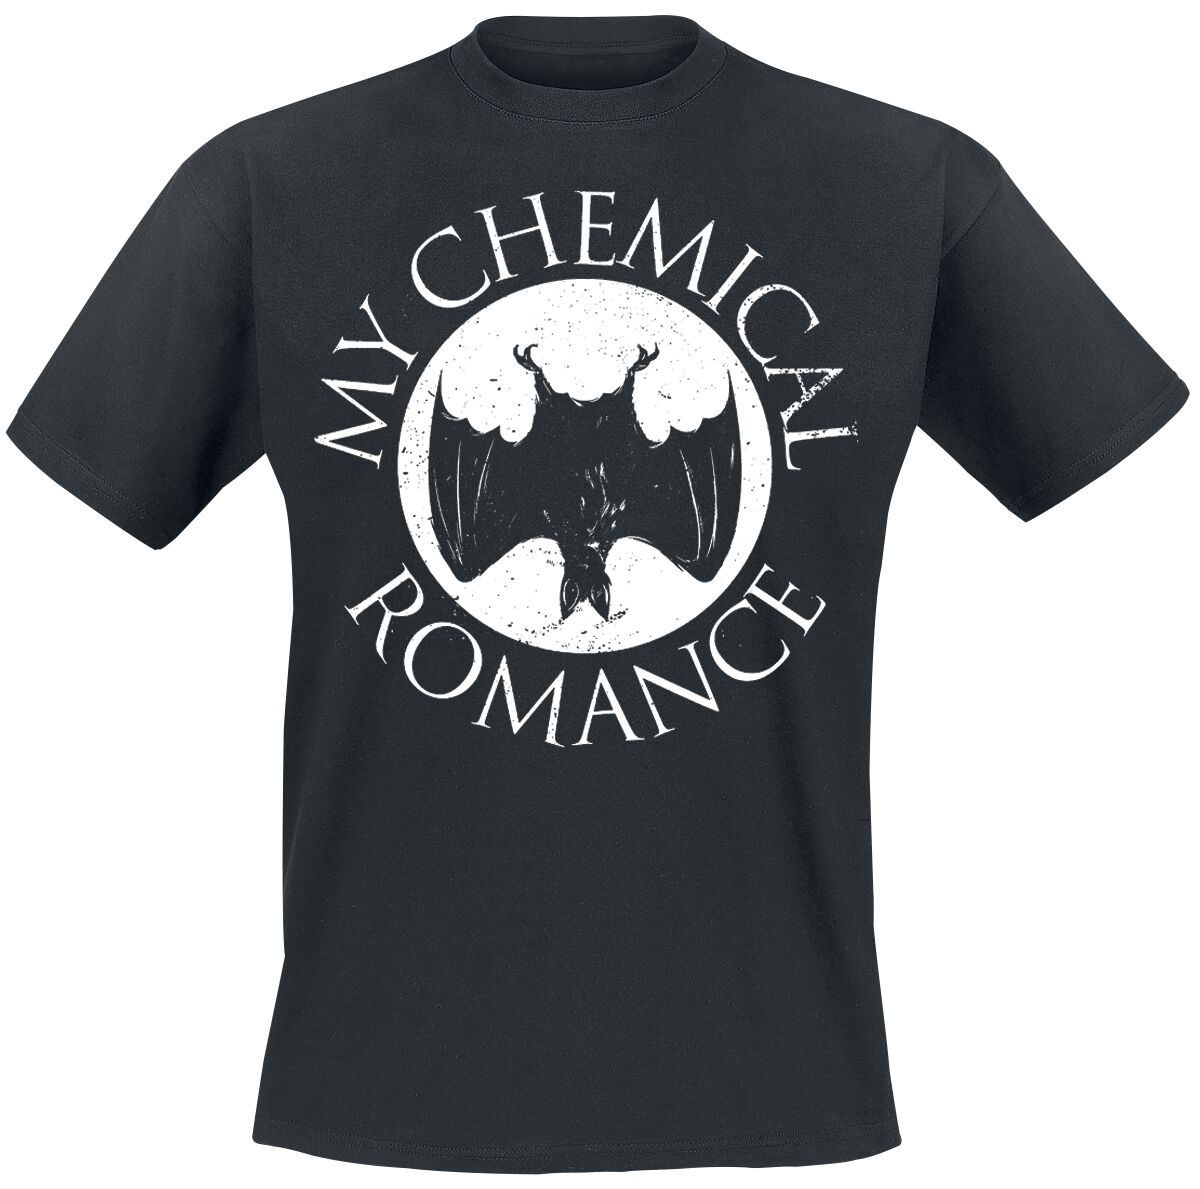 My Chemical Romance T-Shirt - Bat - S bis XXL - für Männer - Größe S - schwarz  - EMP exklusives Merchandise!